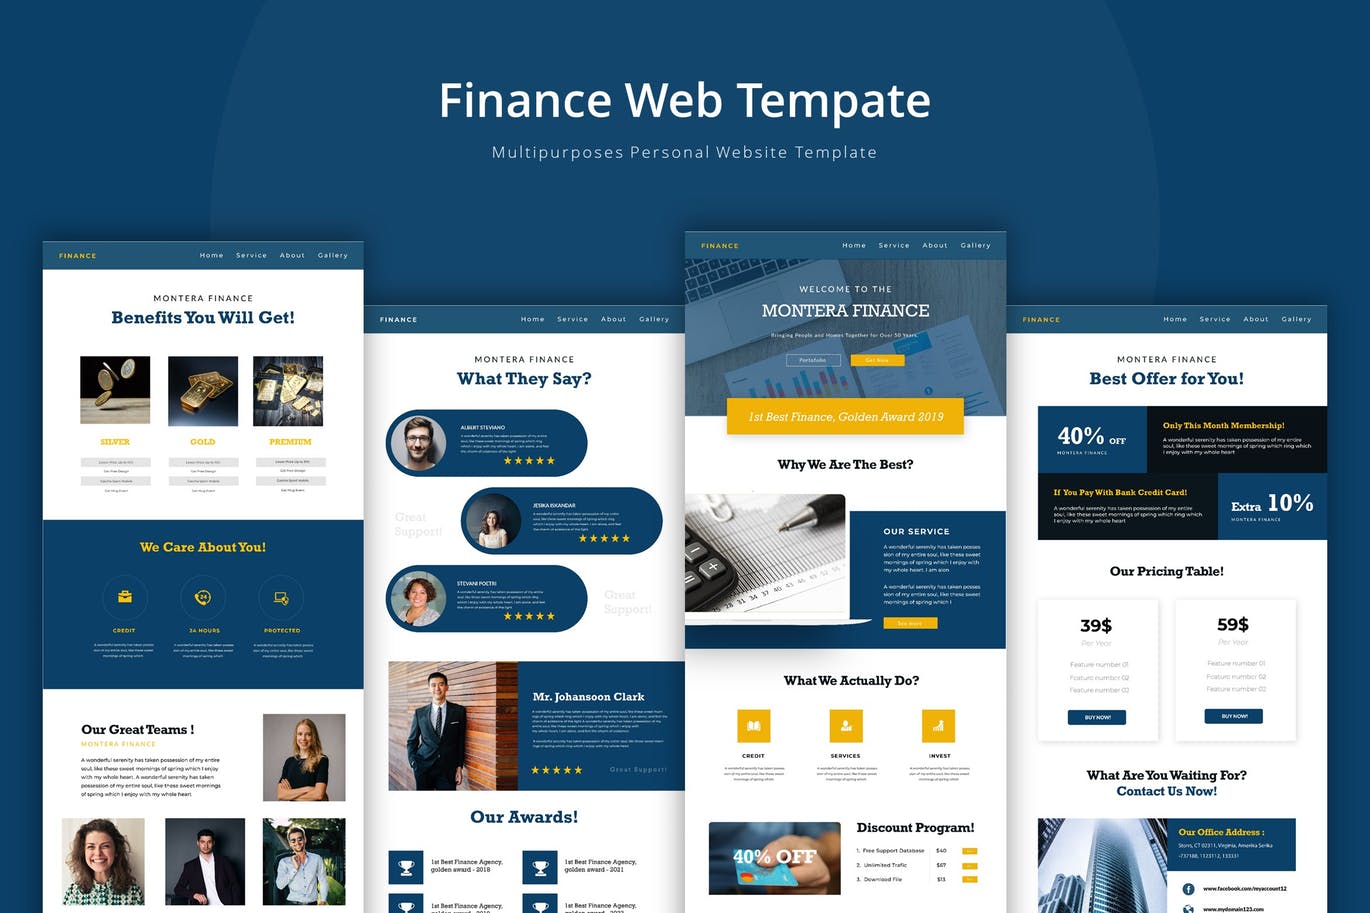 金融理财公司官网企业网站设计第一素材精选模板 Finance Web Template插图